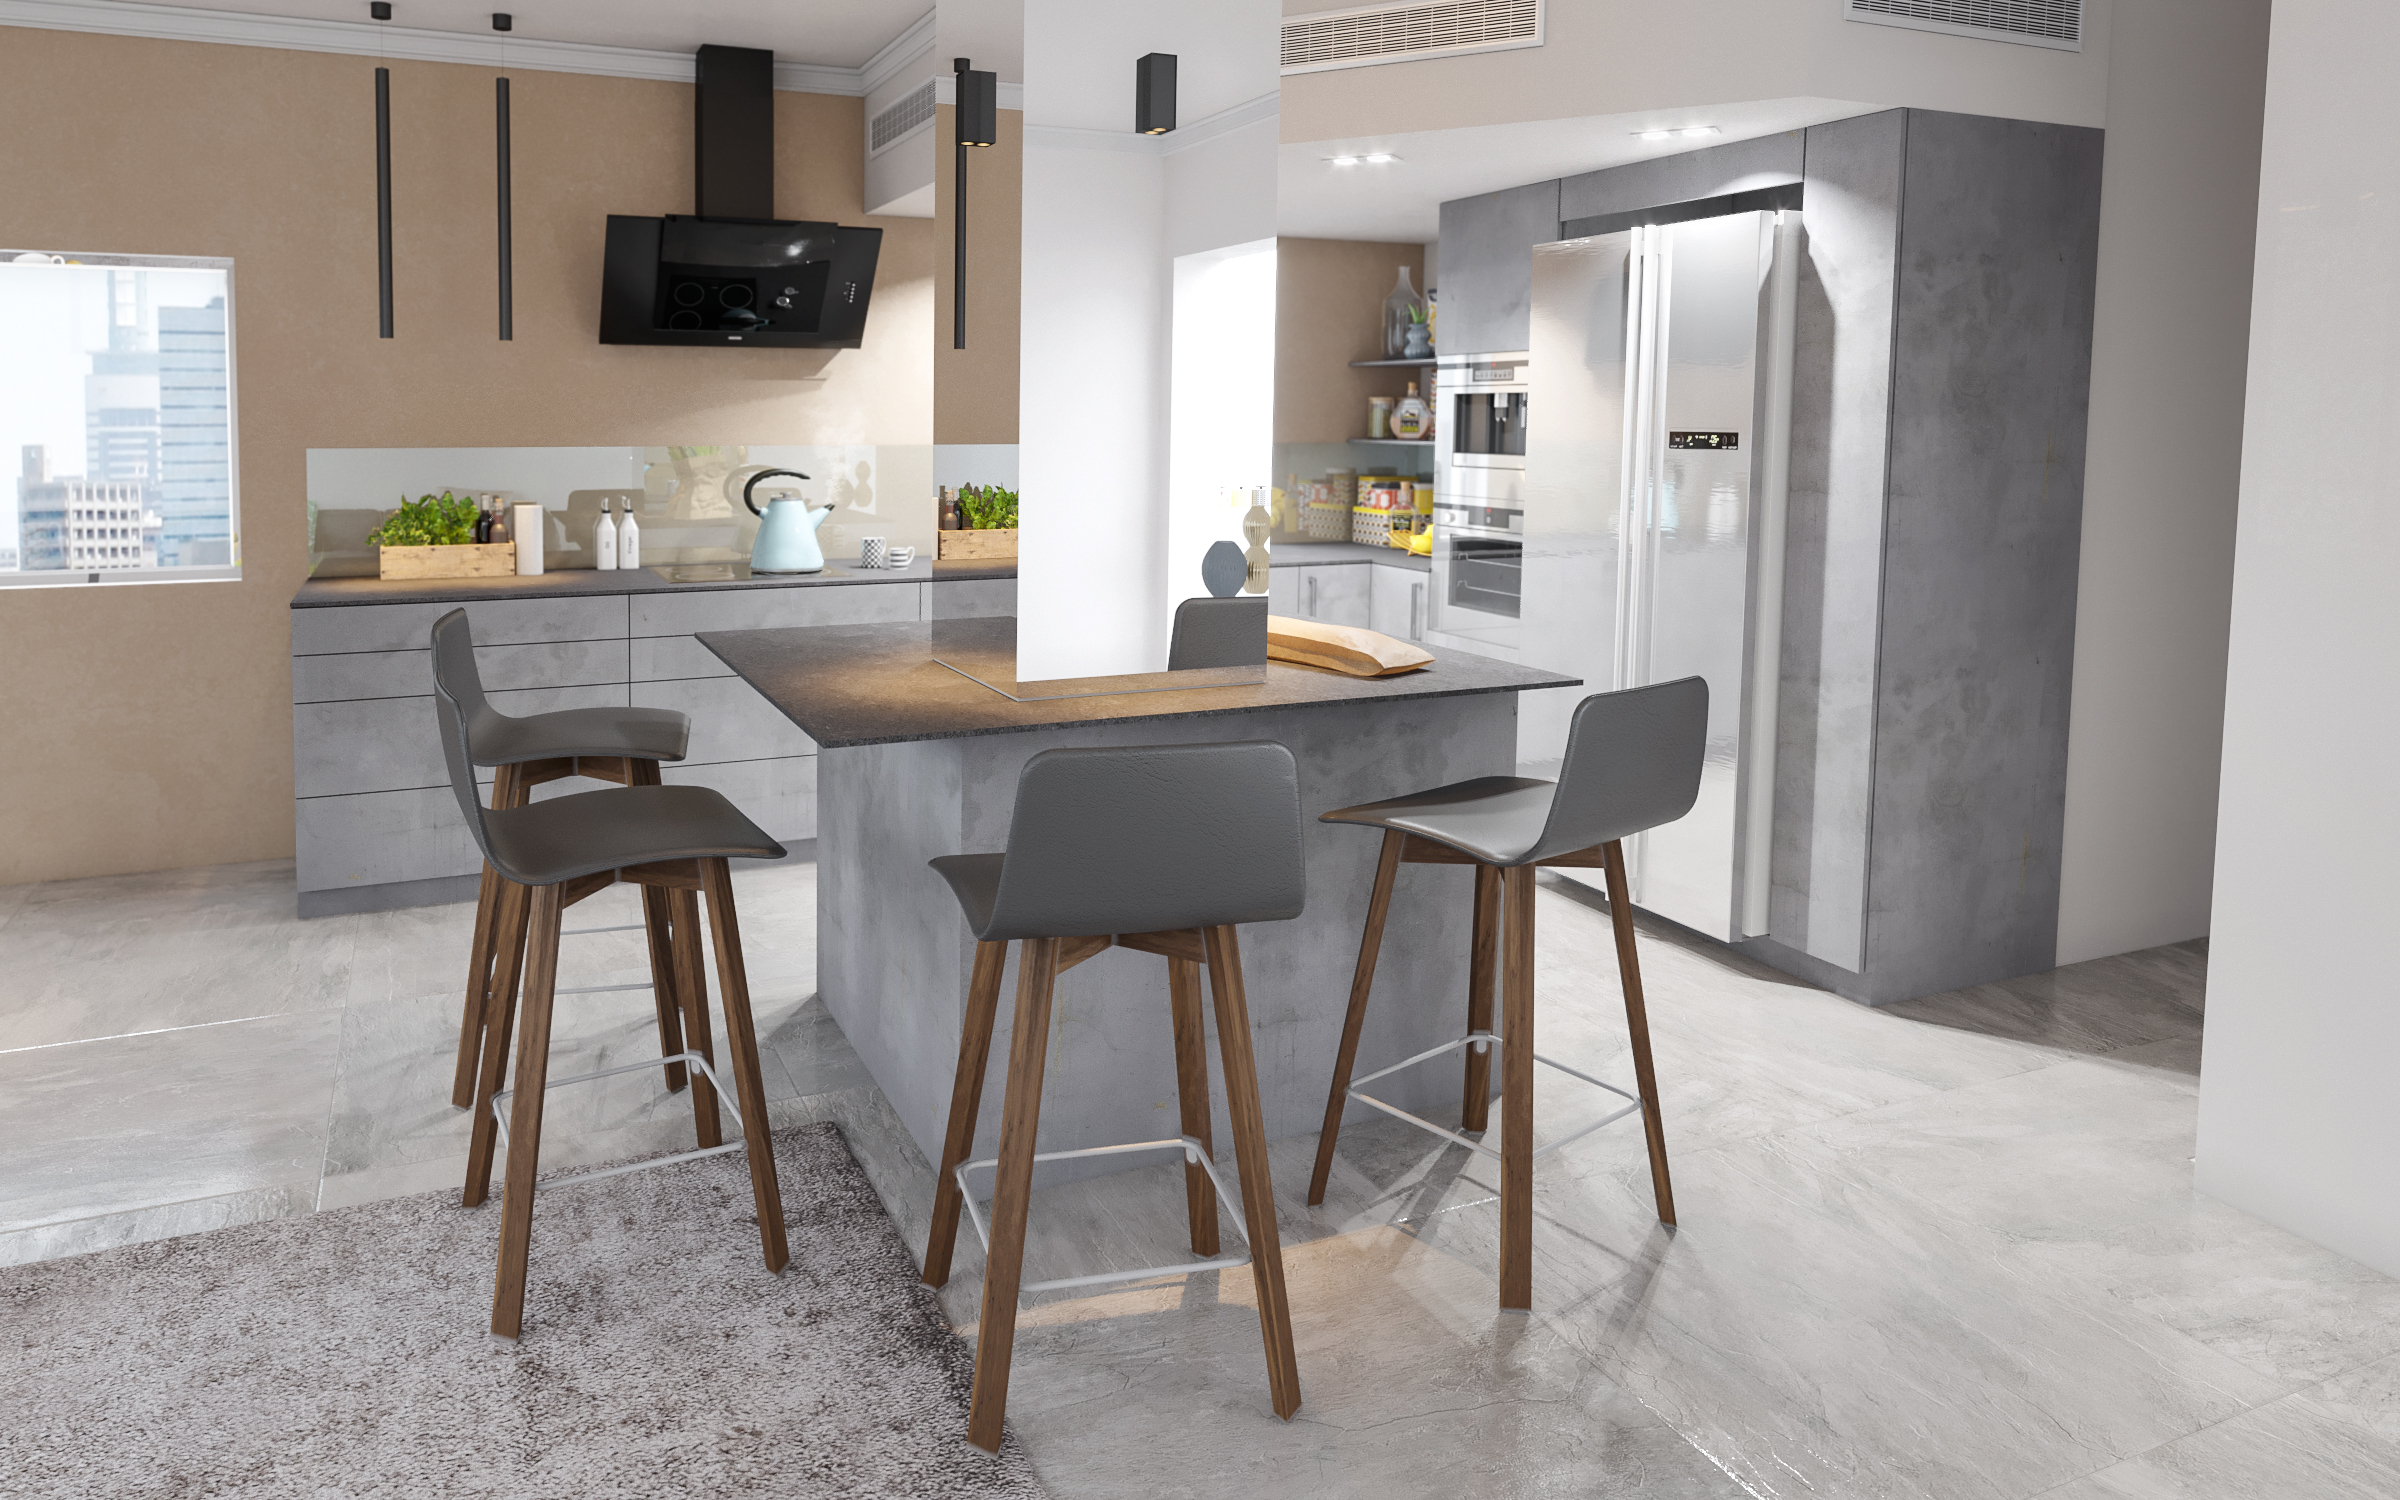 Современная кухня в 3d max corona render изображение